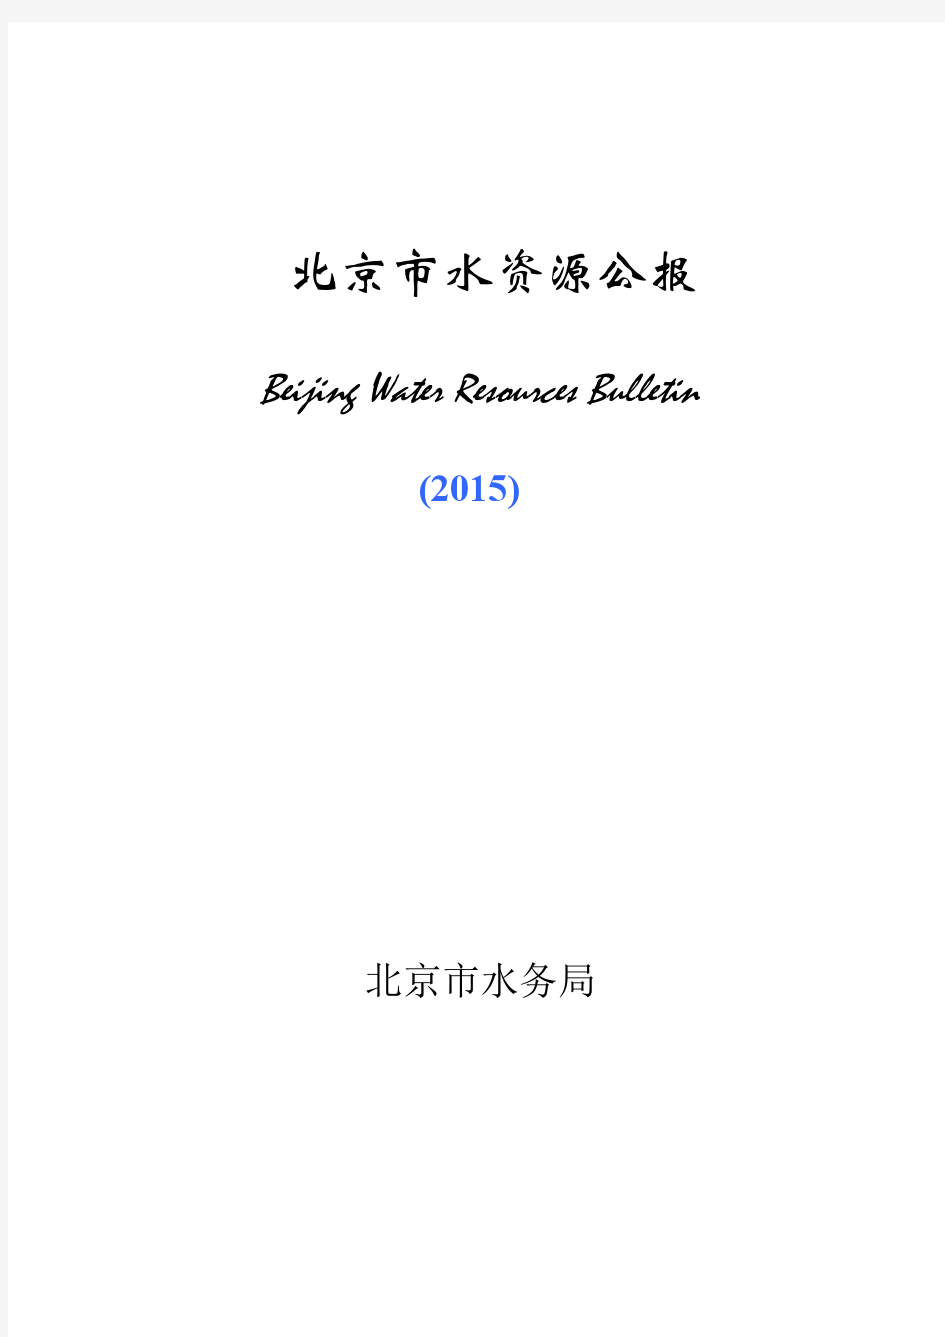 《北京市水资源公报》(2015年度)